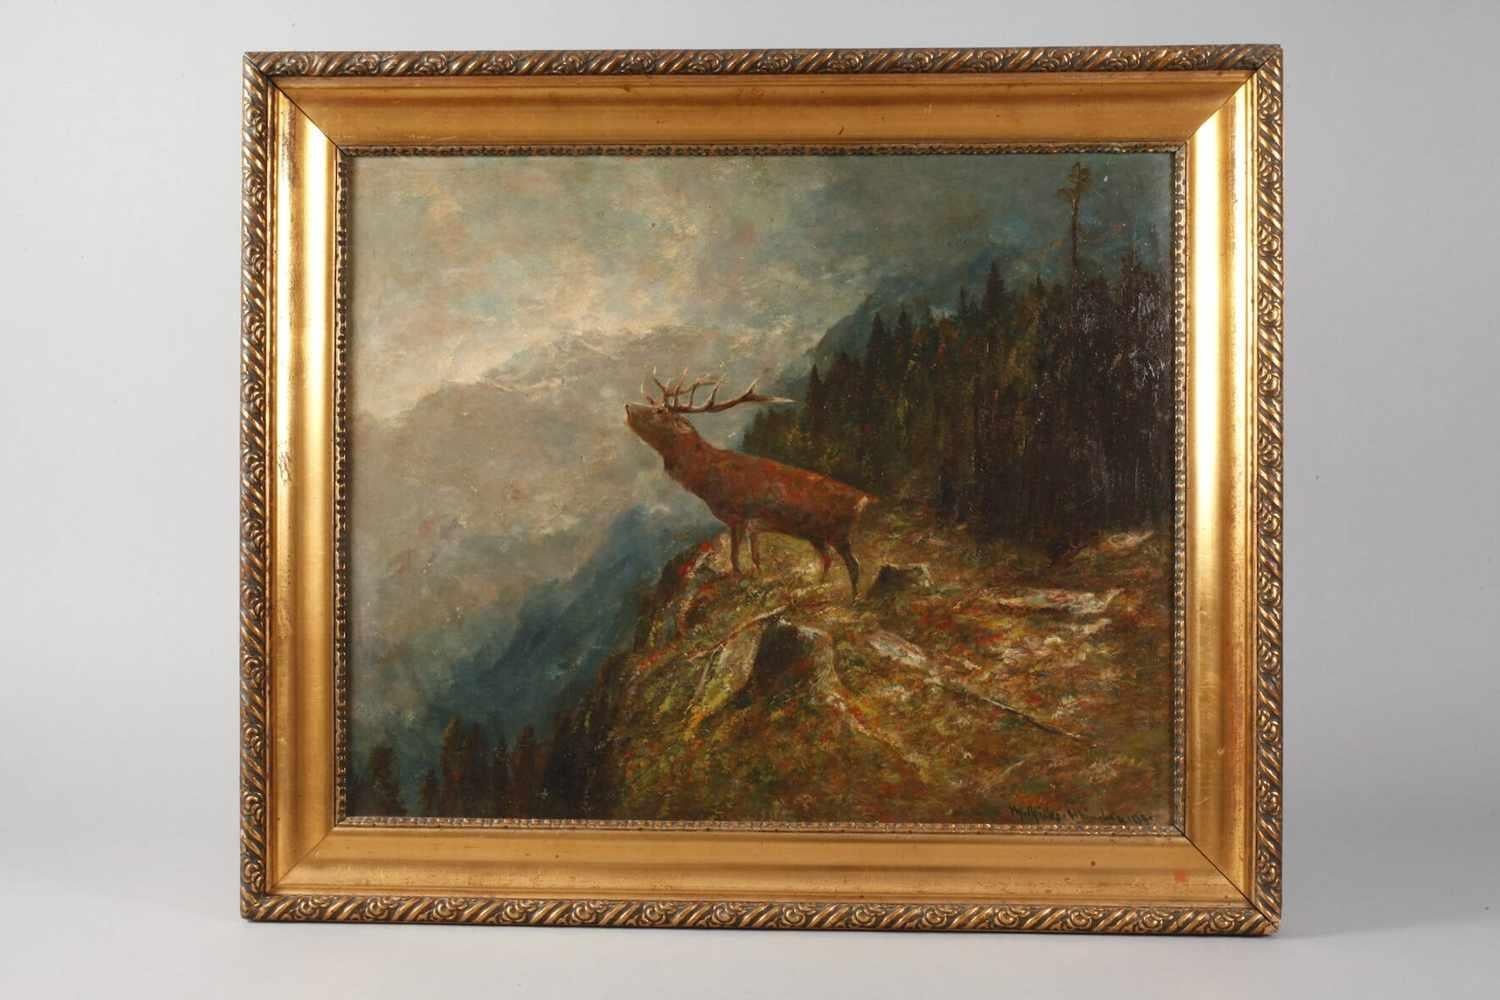 Cerf rugissant dans un paysage de montagne Grande peinture à l'huile signée sur toile encadrée - Painting de Moritz Muller